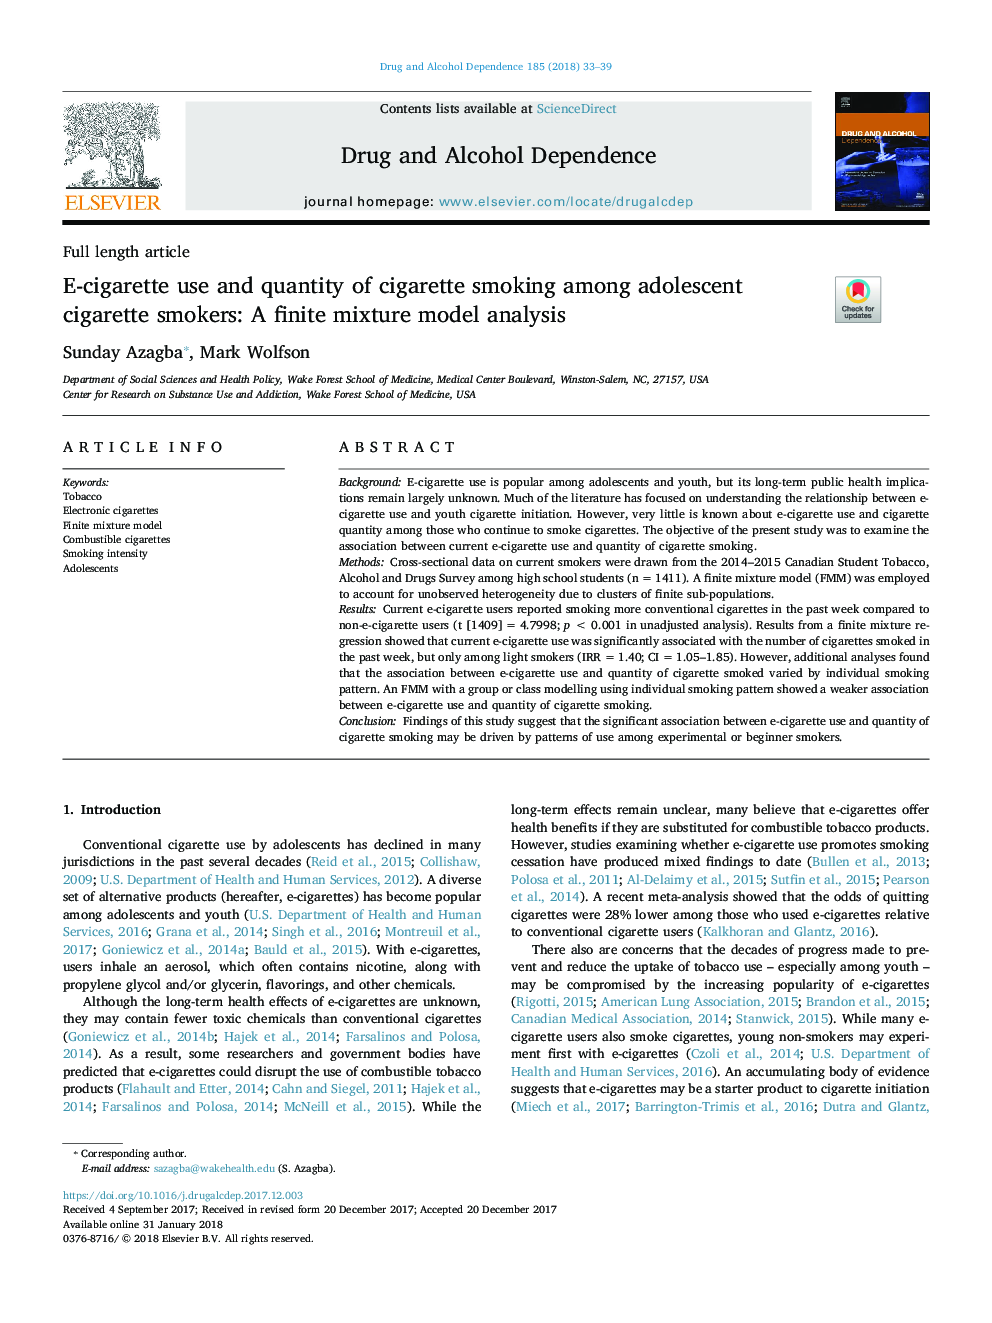 استفاده از سیگار و مقدار سیگار کشیدن سیگاریهای سیگاری نوجوانان: تجزیه و تحلیل مدل ترکیبی محدود 